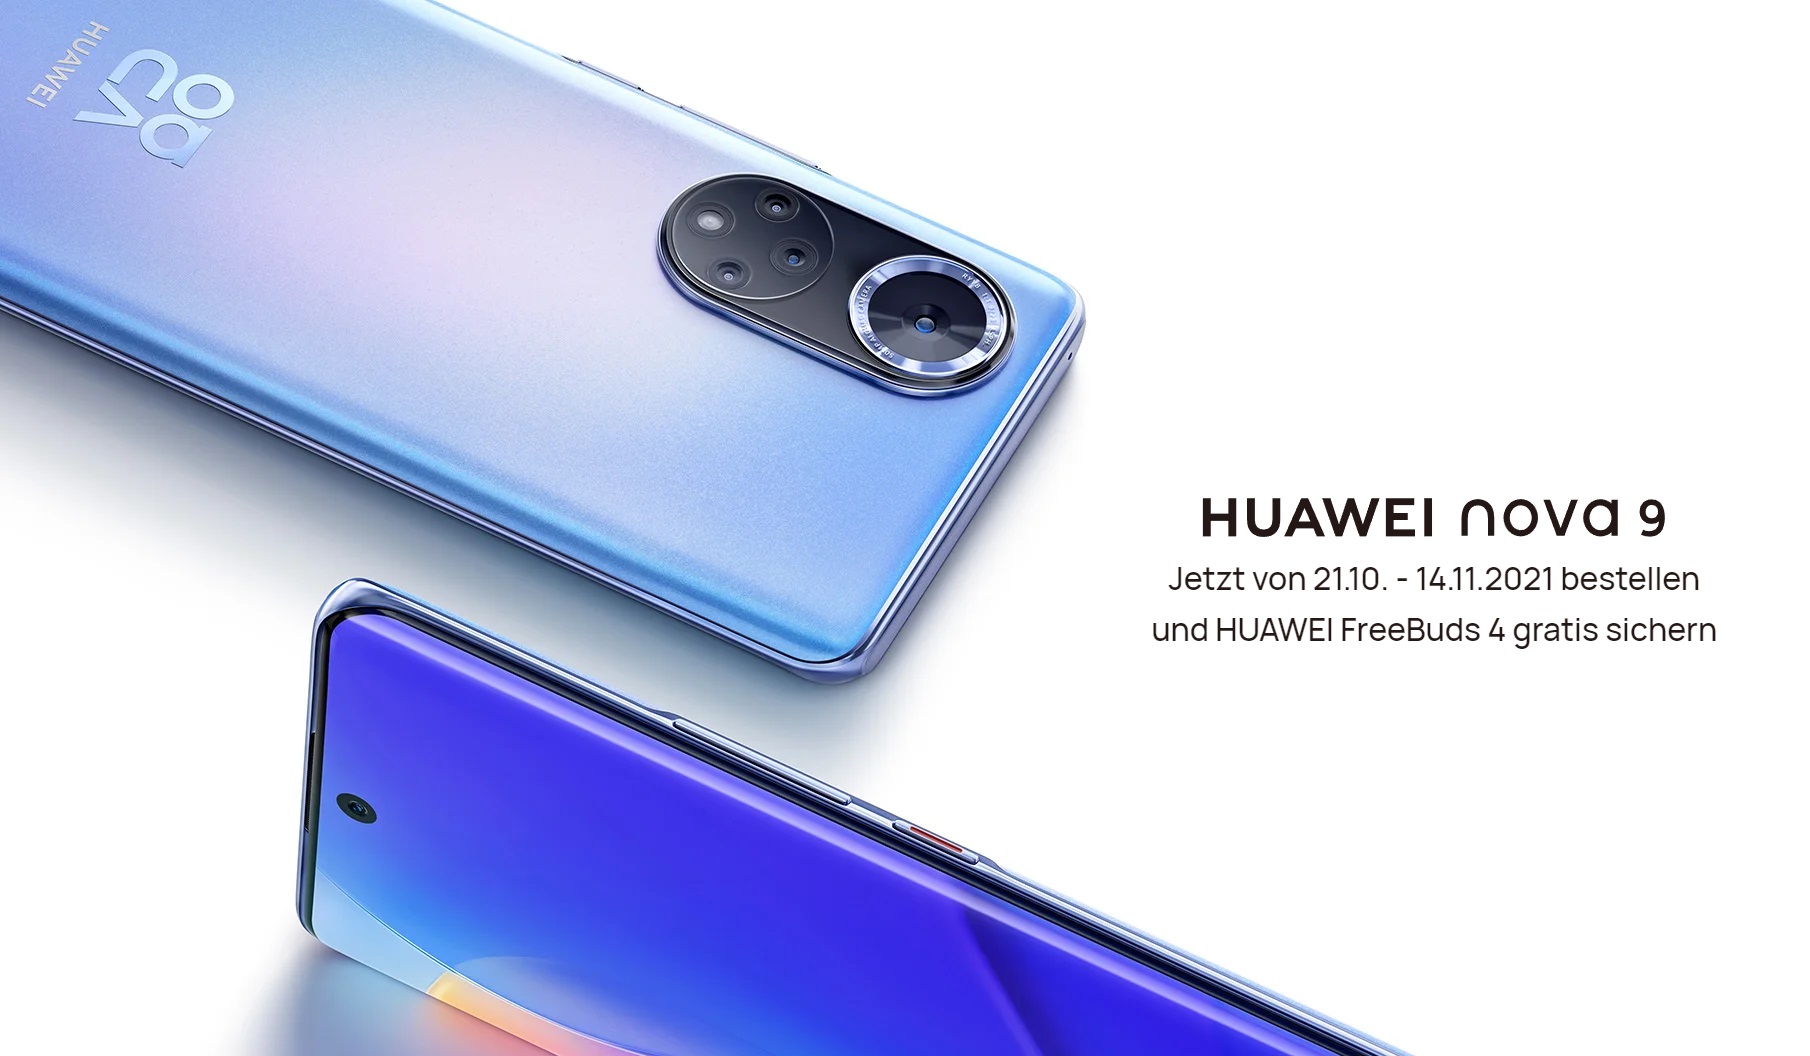 Huawei nova 9 en Europe - Snapdragon 778G sans 5G, appareil photo 50MP et écran OLED 120Hz pour 499 €